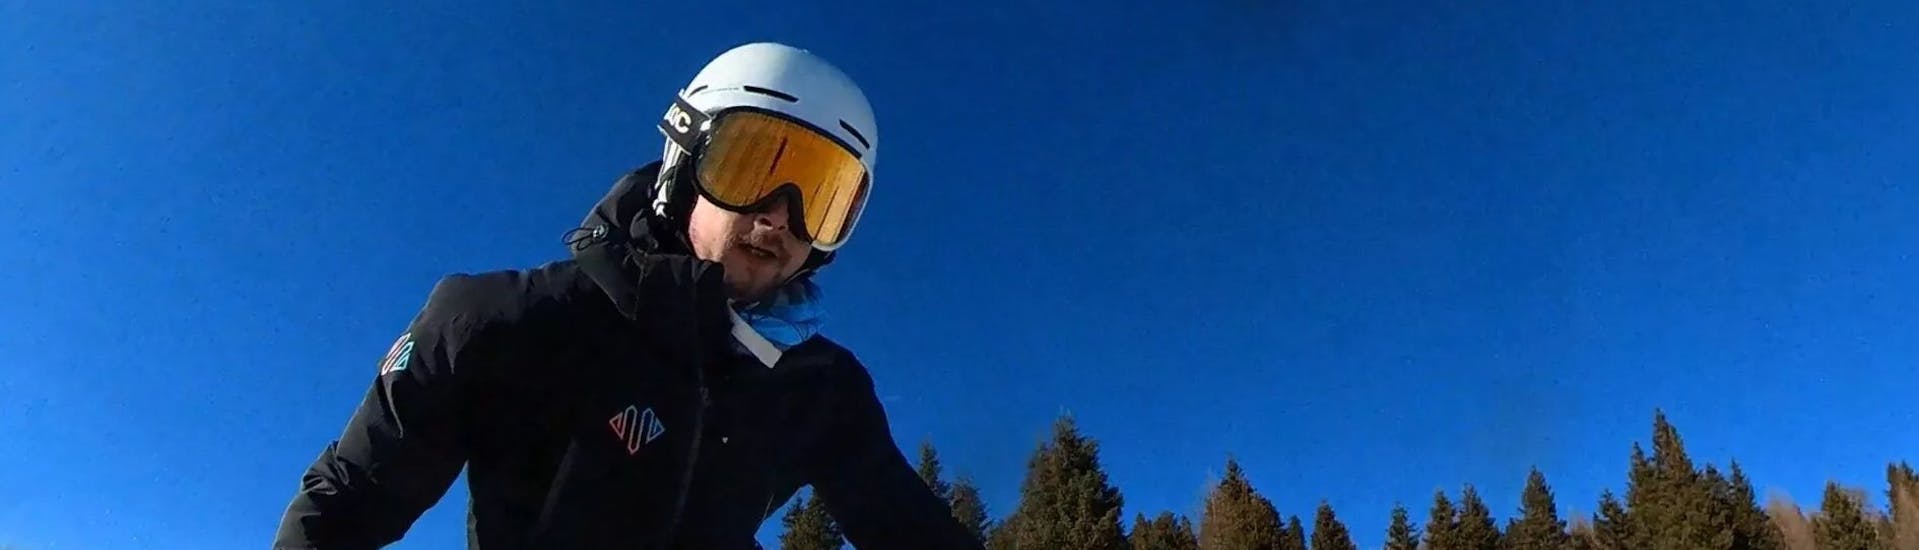 Un istruttore della Promescaiol Ski & Snow Academy Daolasa fa una discesa durante le Lezioni di sci per adulti per principianti e intermedi.